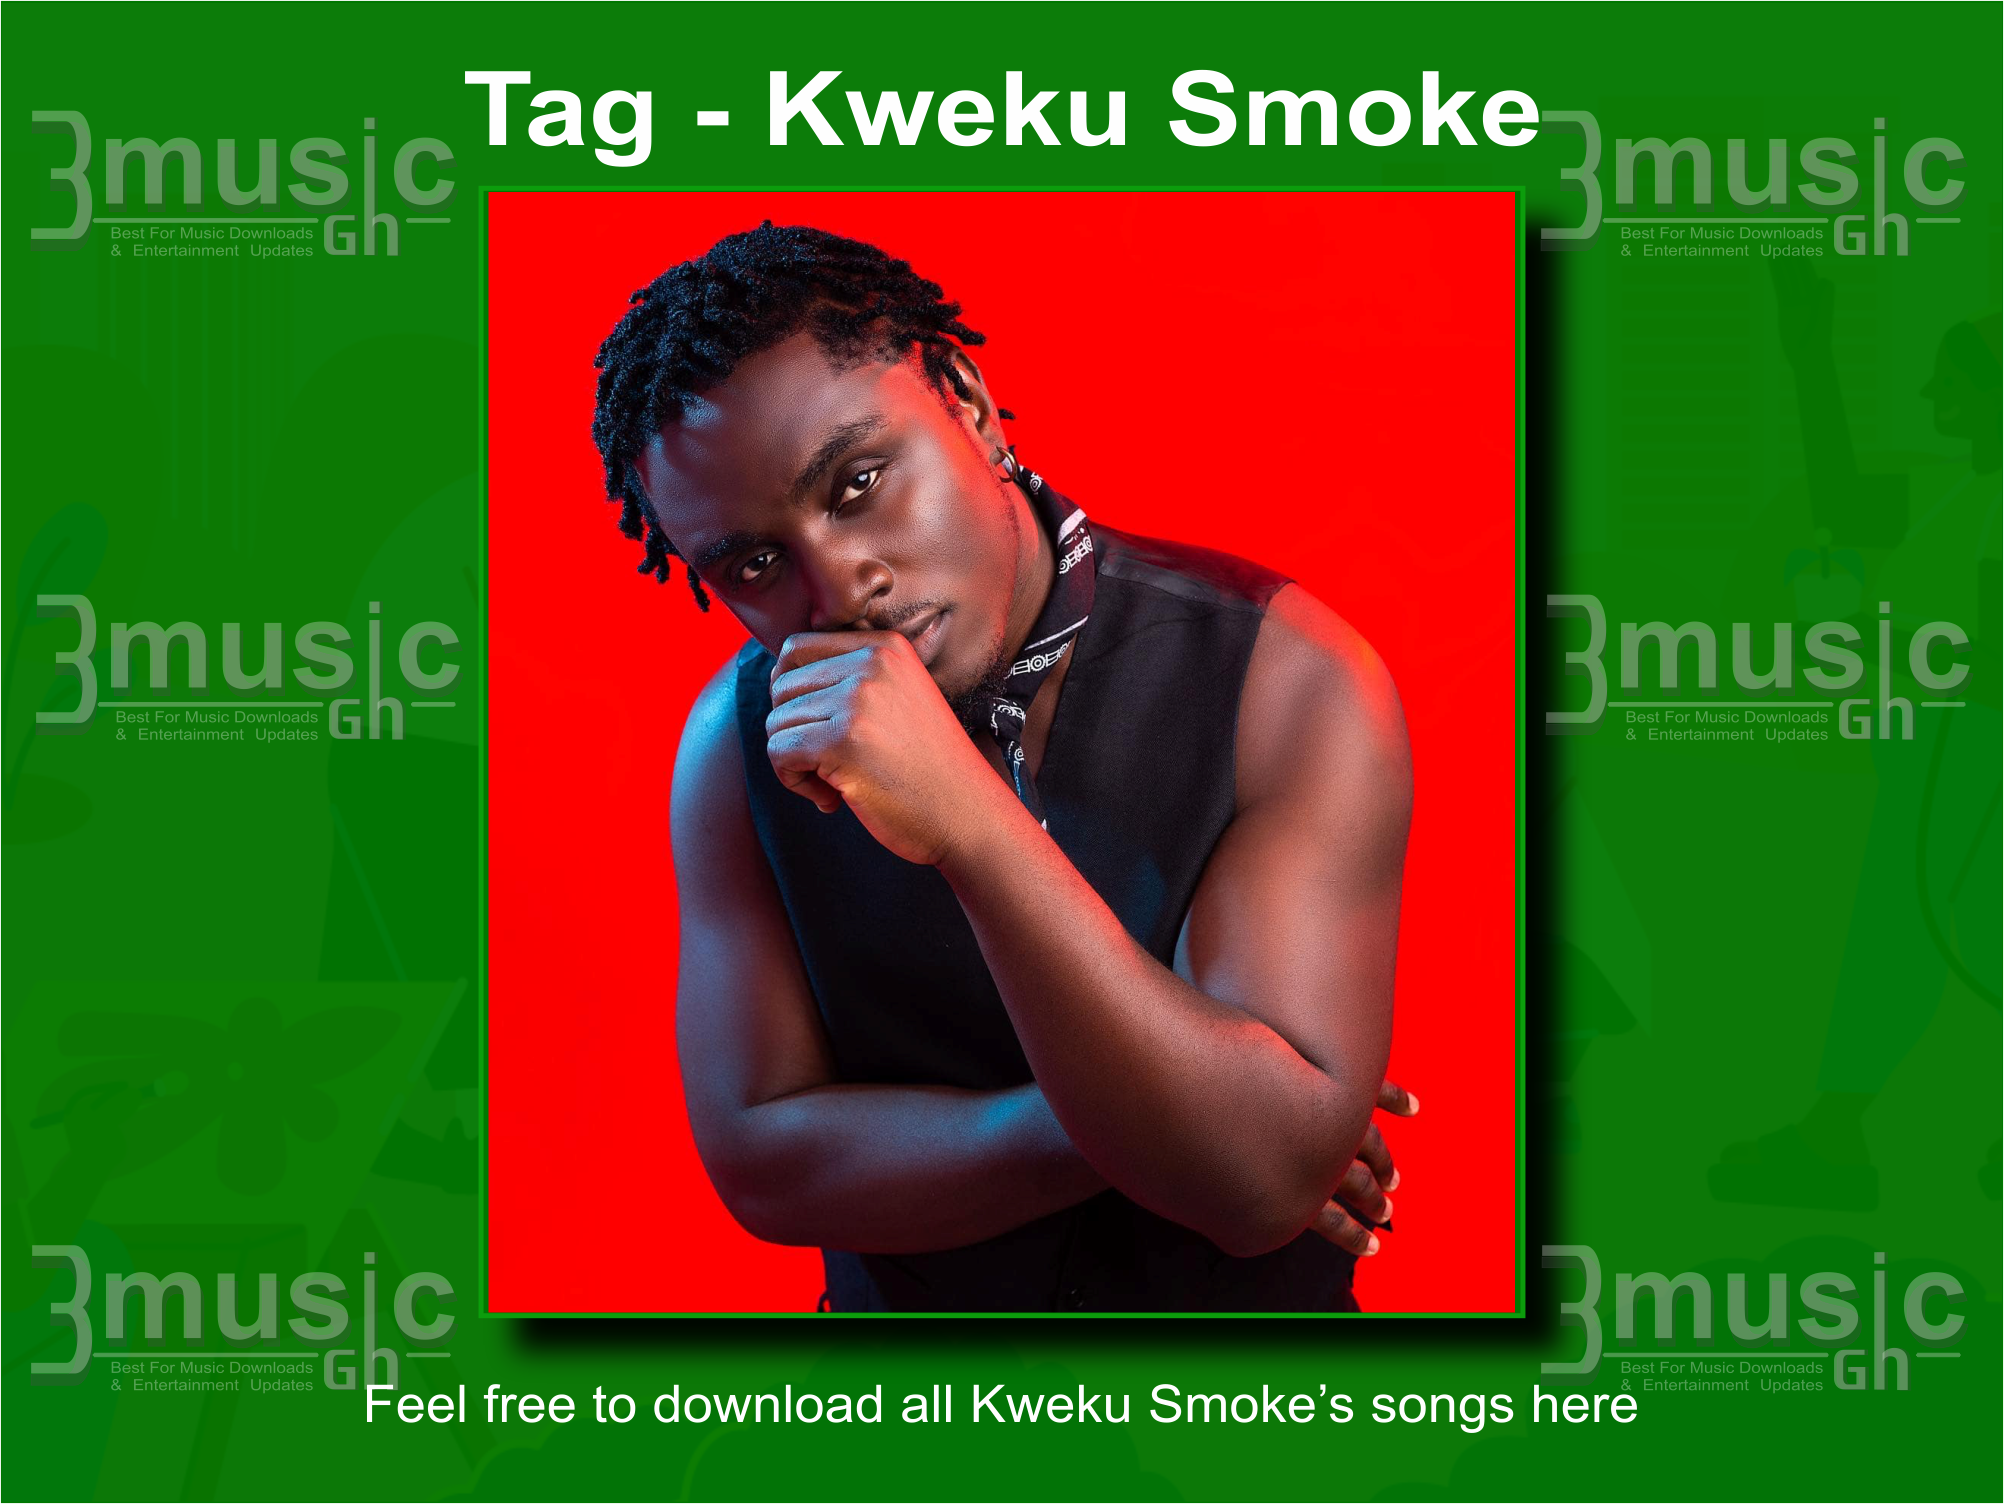 Kweku Smoke songs all download_3musicgh.com